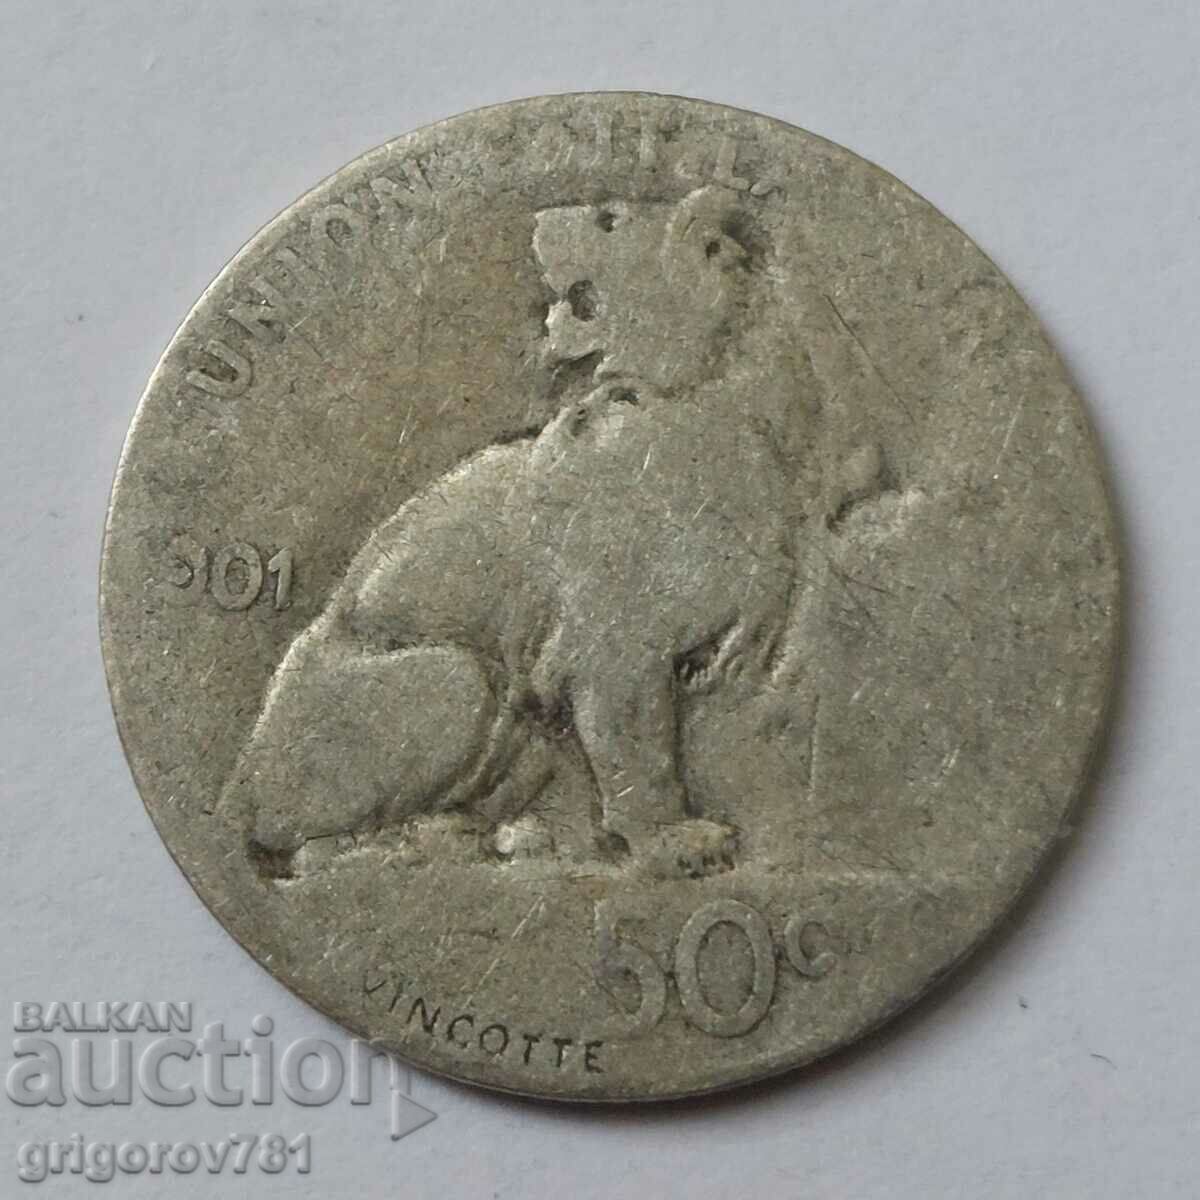 50 centimes silver Belgium 1901 - silver coin #74